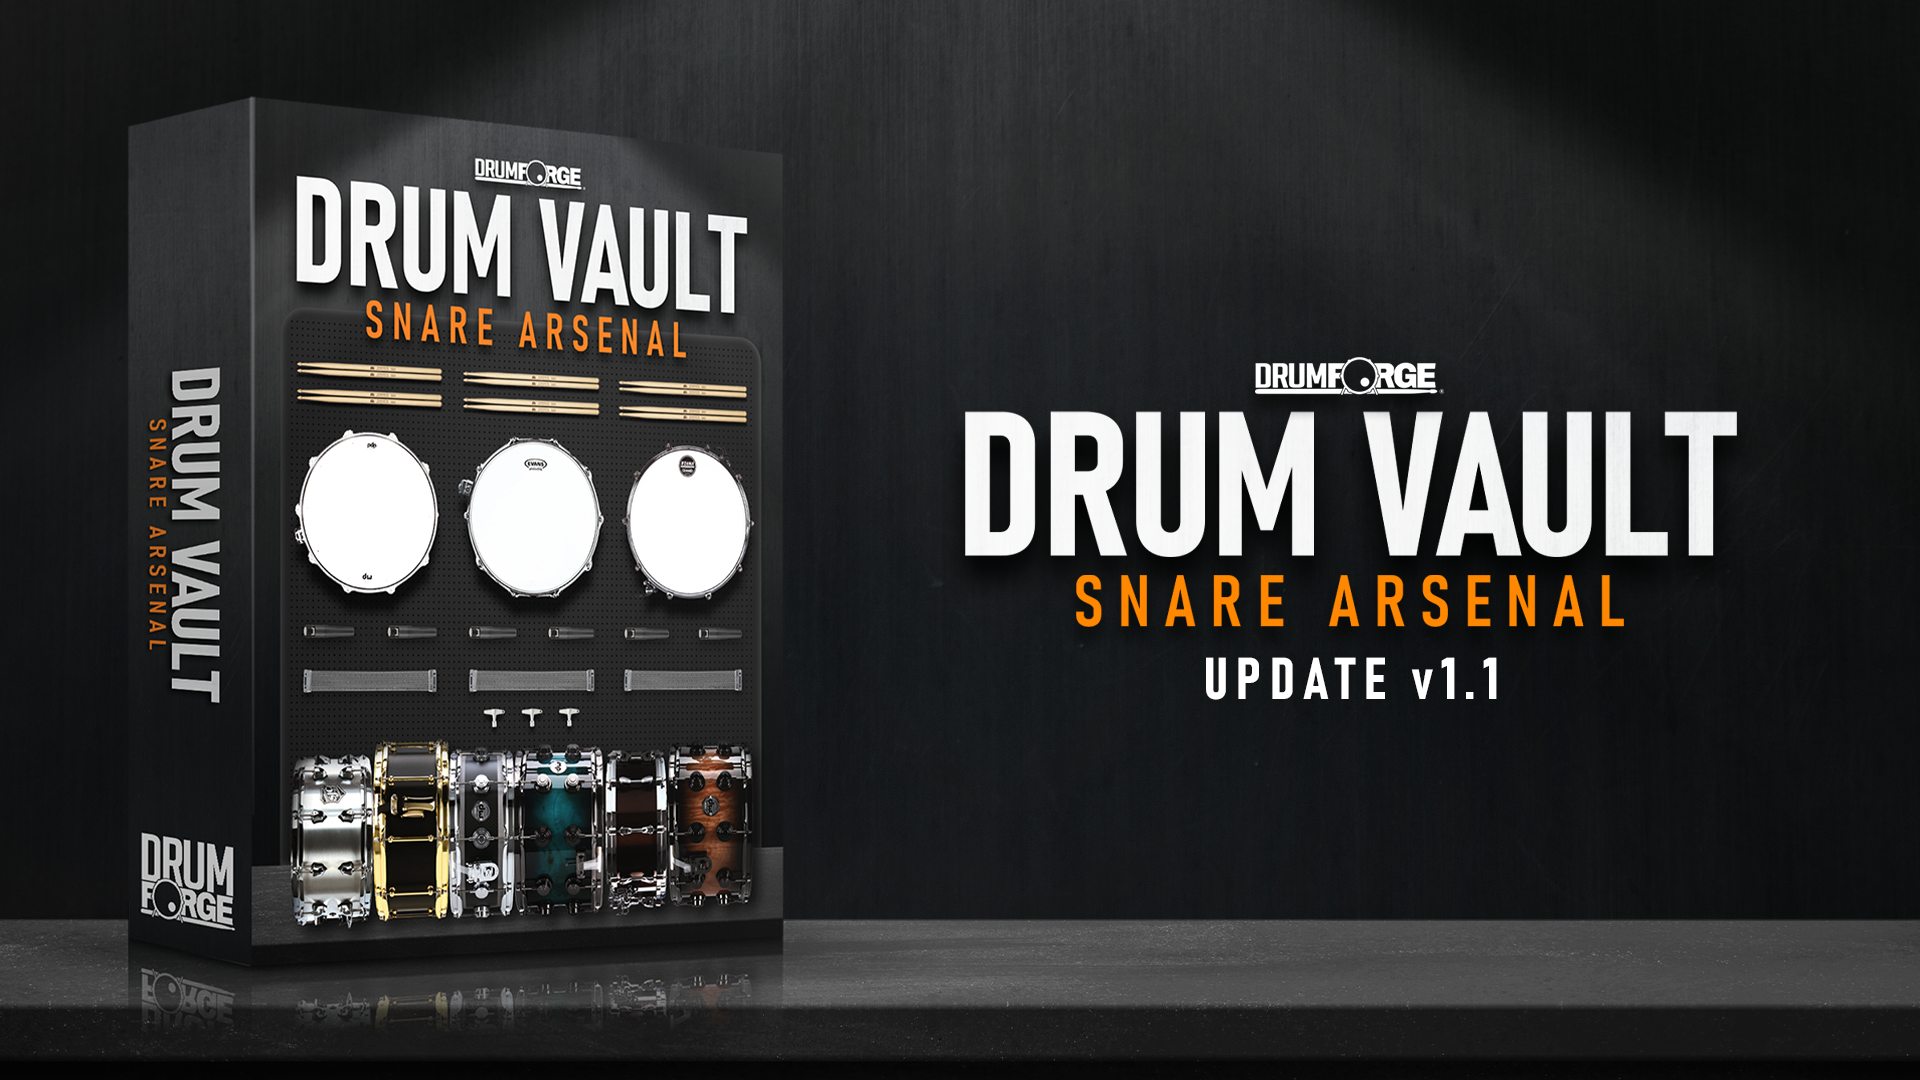 Drum Vault Snare Arsenal v1.1 Update